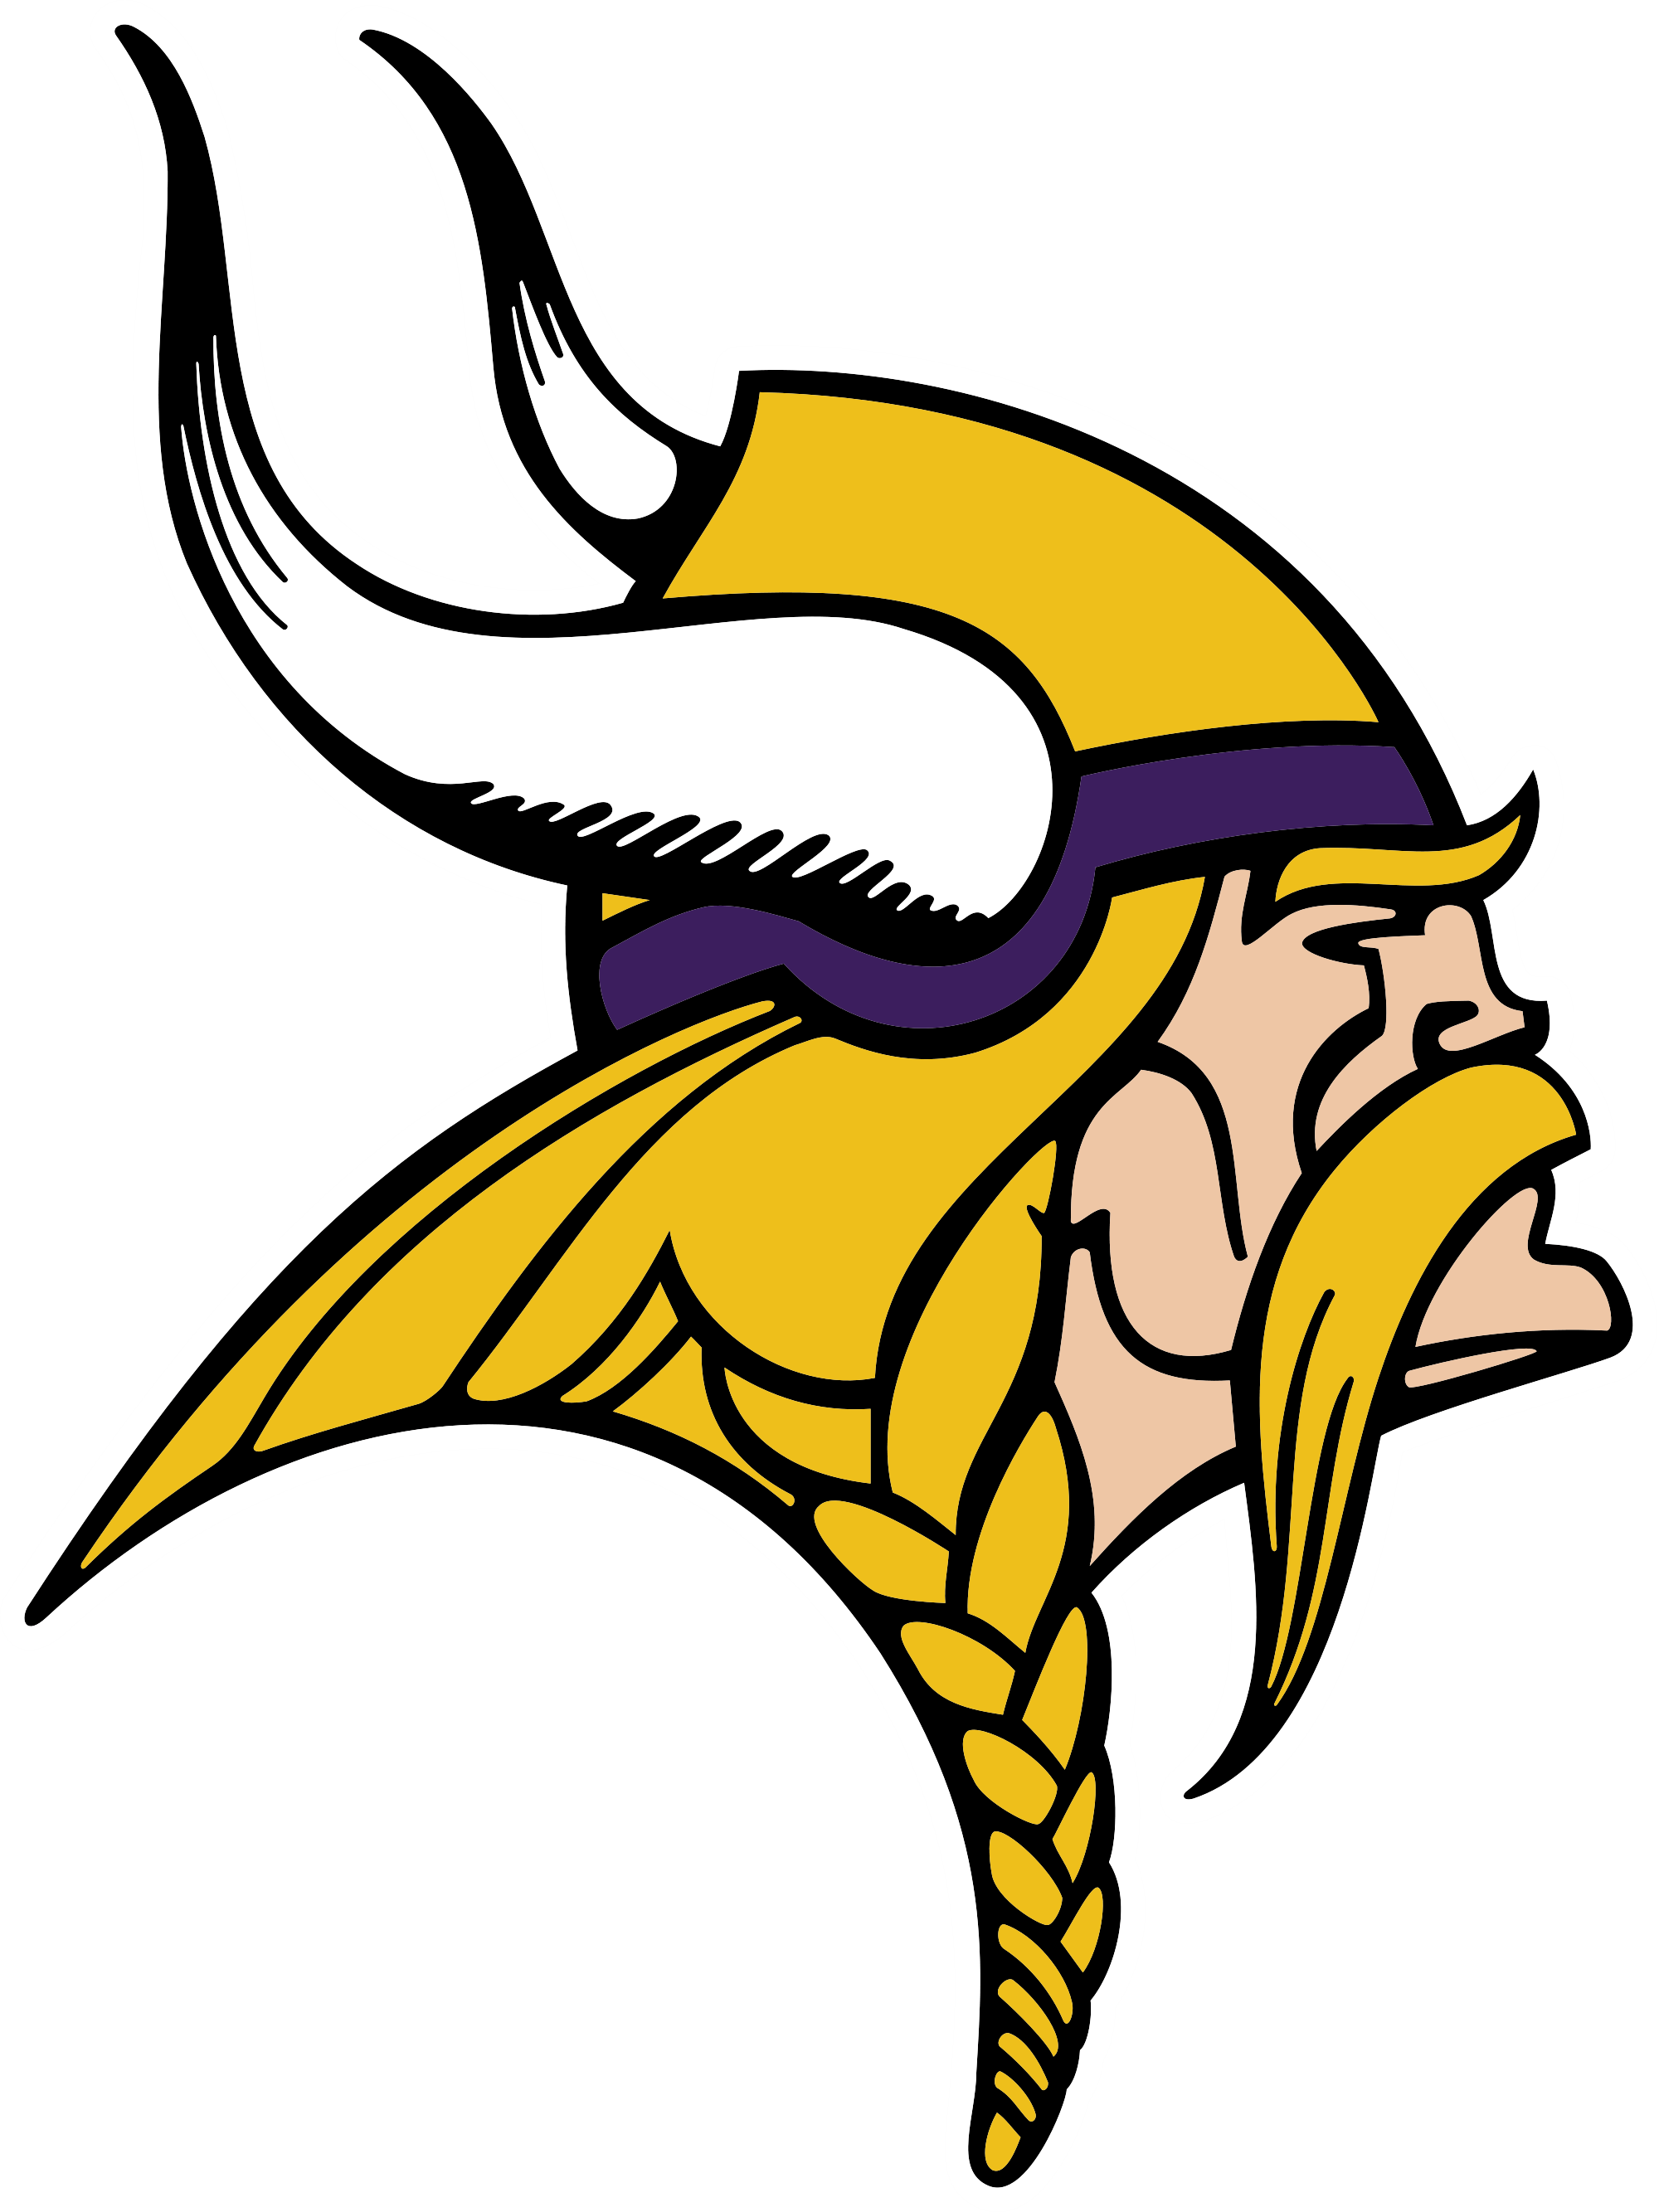 Image For > Minnesota Vikings New Logo Wallpapers